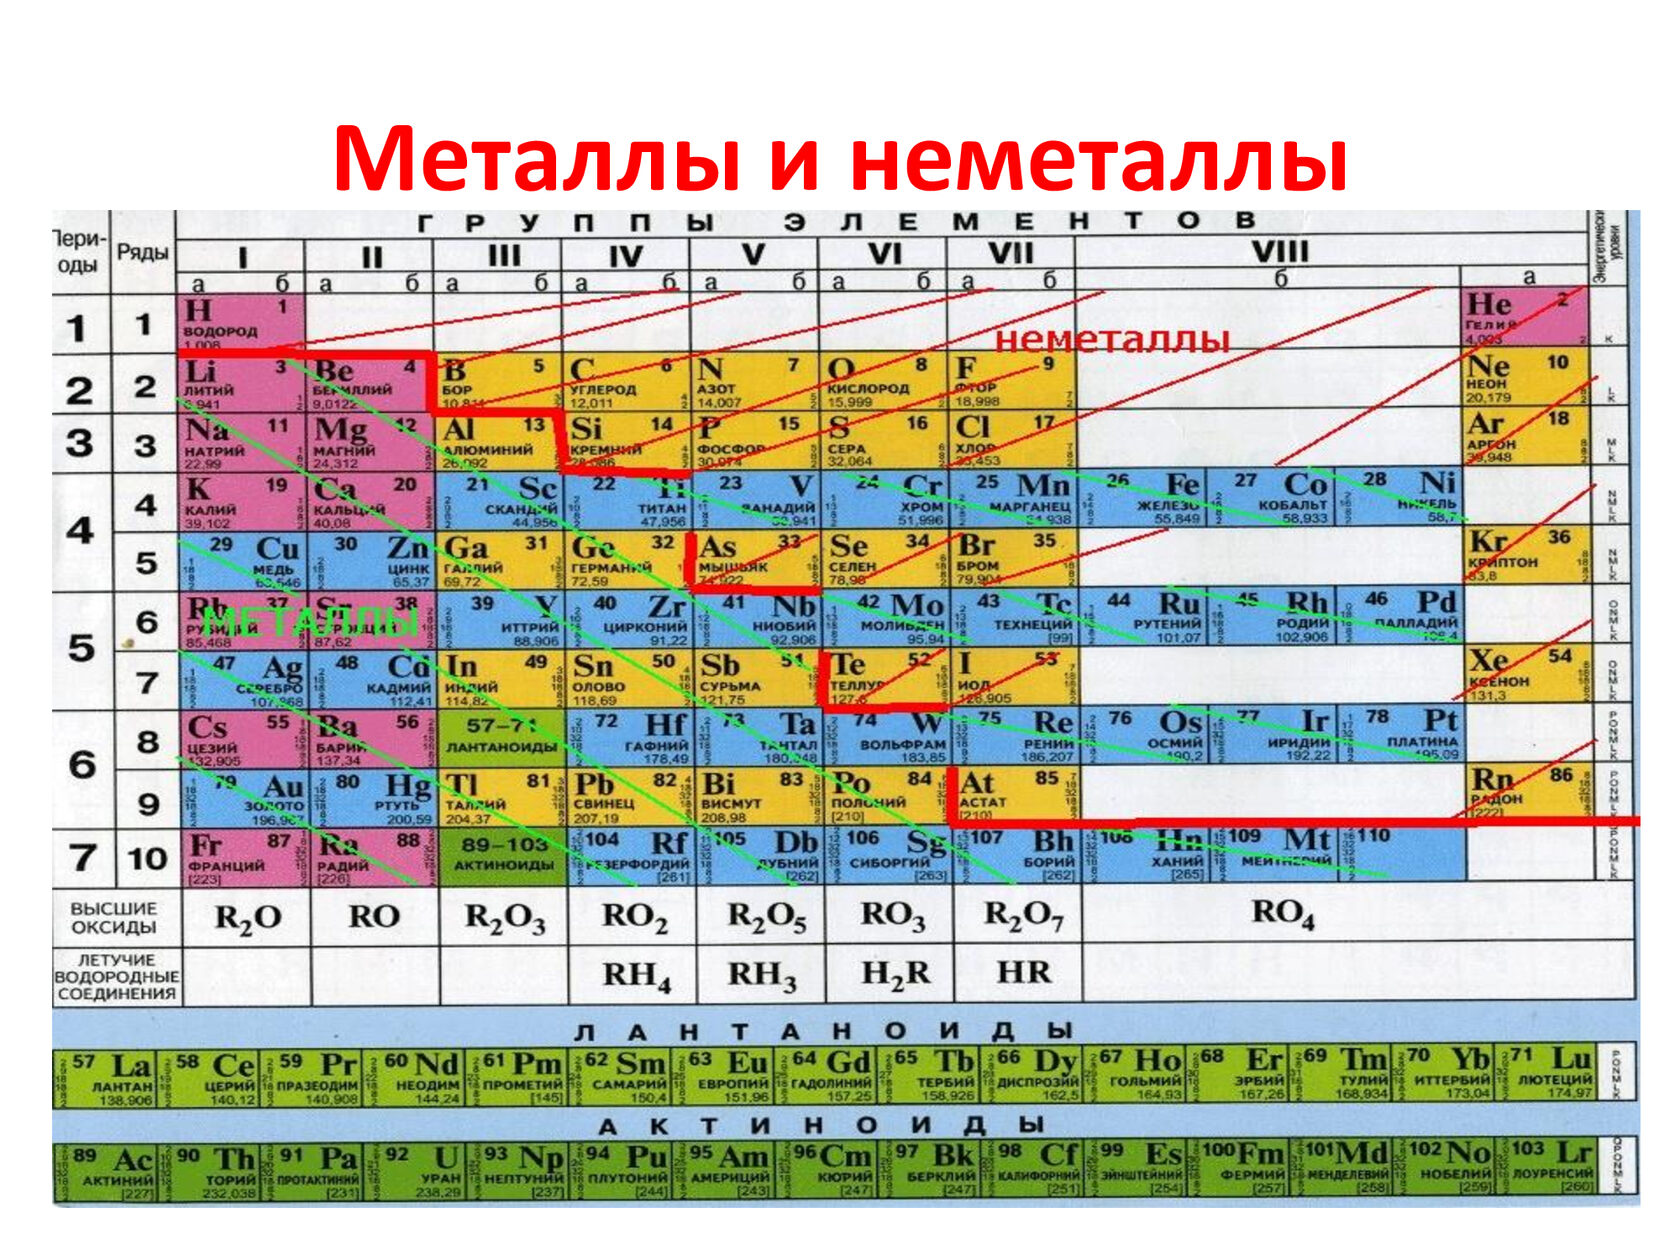 Группа и подгруппа калия. Таблица Менделеева металлы и неметаллы. Химия металлы и неметаллы таблица. Химические элементы металлы и неметаллы. Таблица элементов Менделеева металлы и неметаллы.